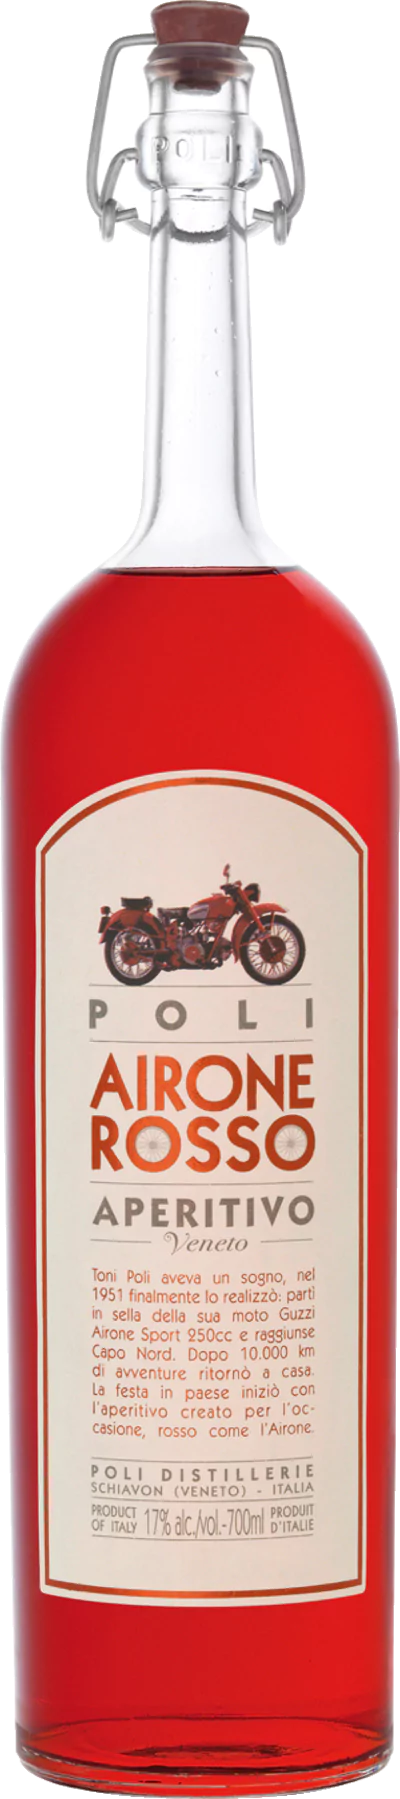 airone rosso aperitivo - Die Welt der Weine